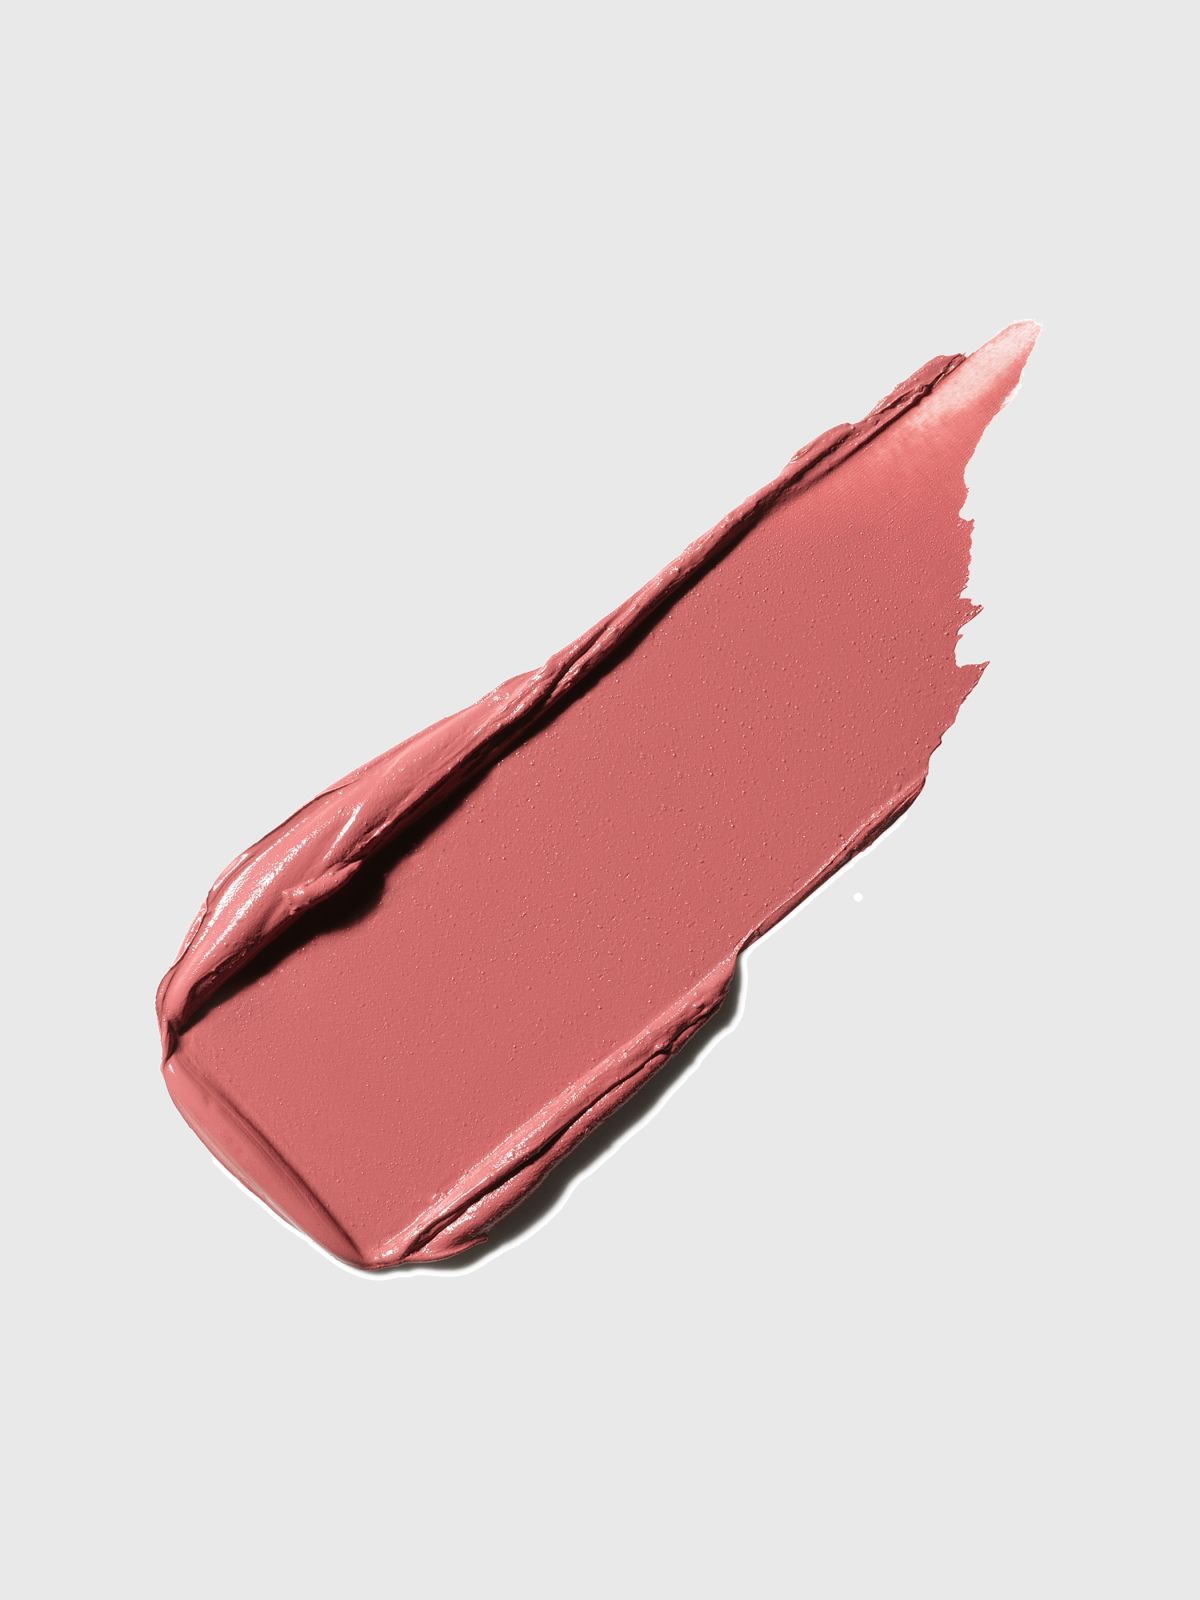  שפתון במהדורת Think Pink של MAC